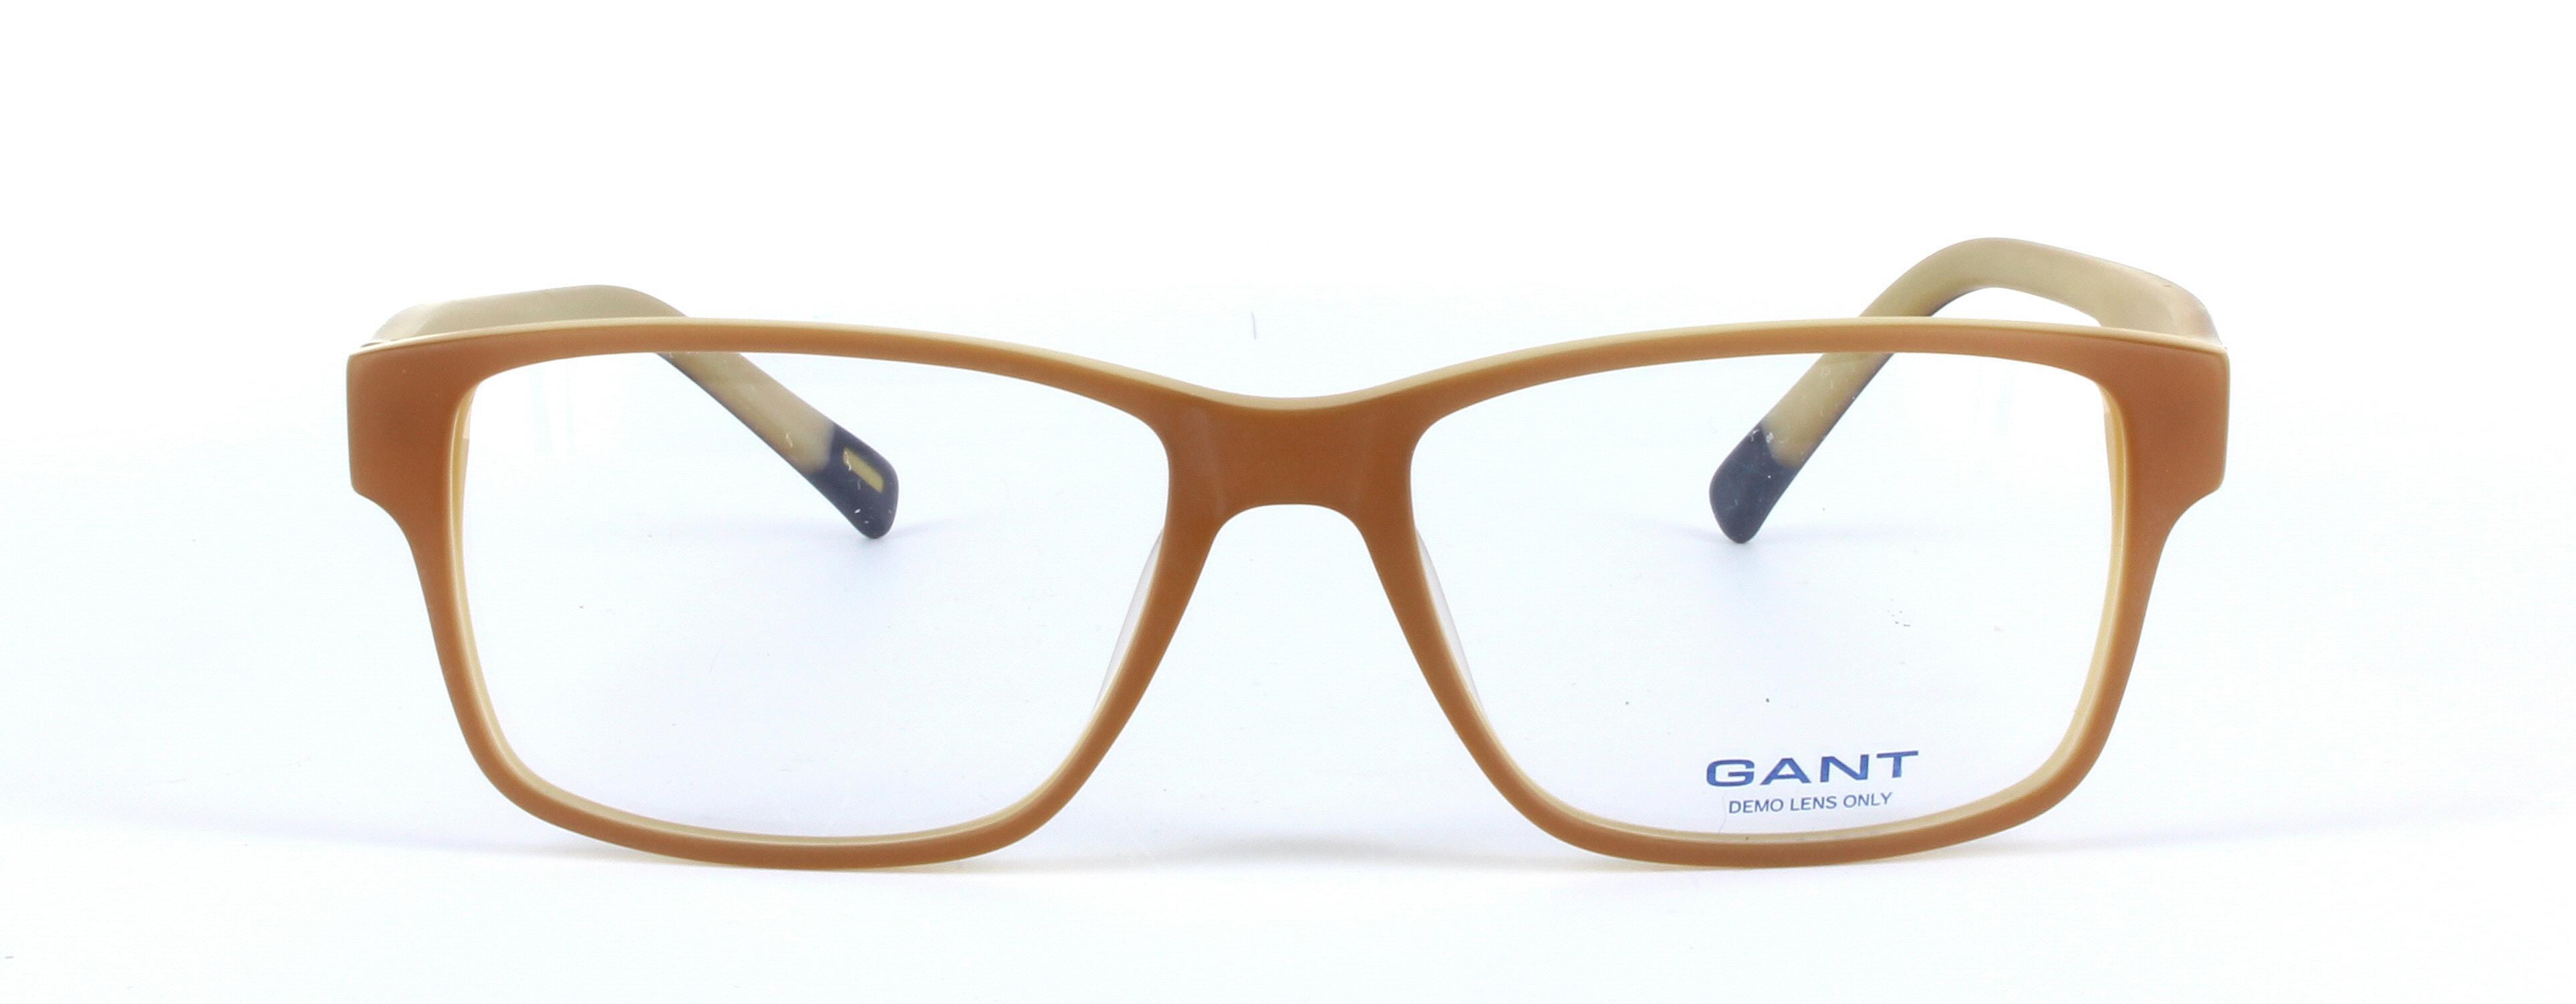 GANT (G3005) Brown Full Rim Rectangular Acetate Glasses - Image View 5